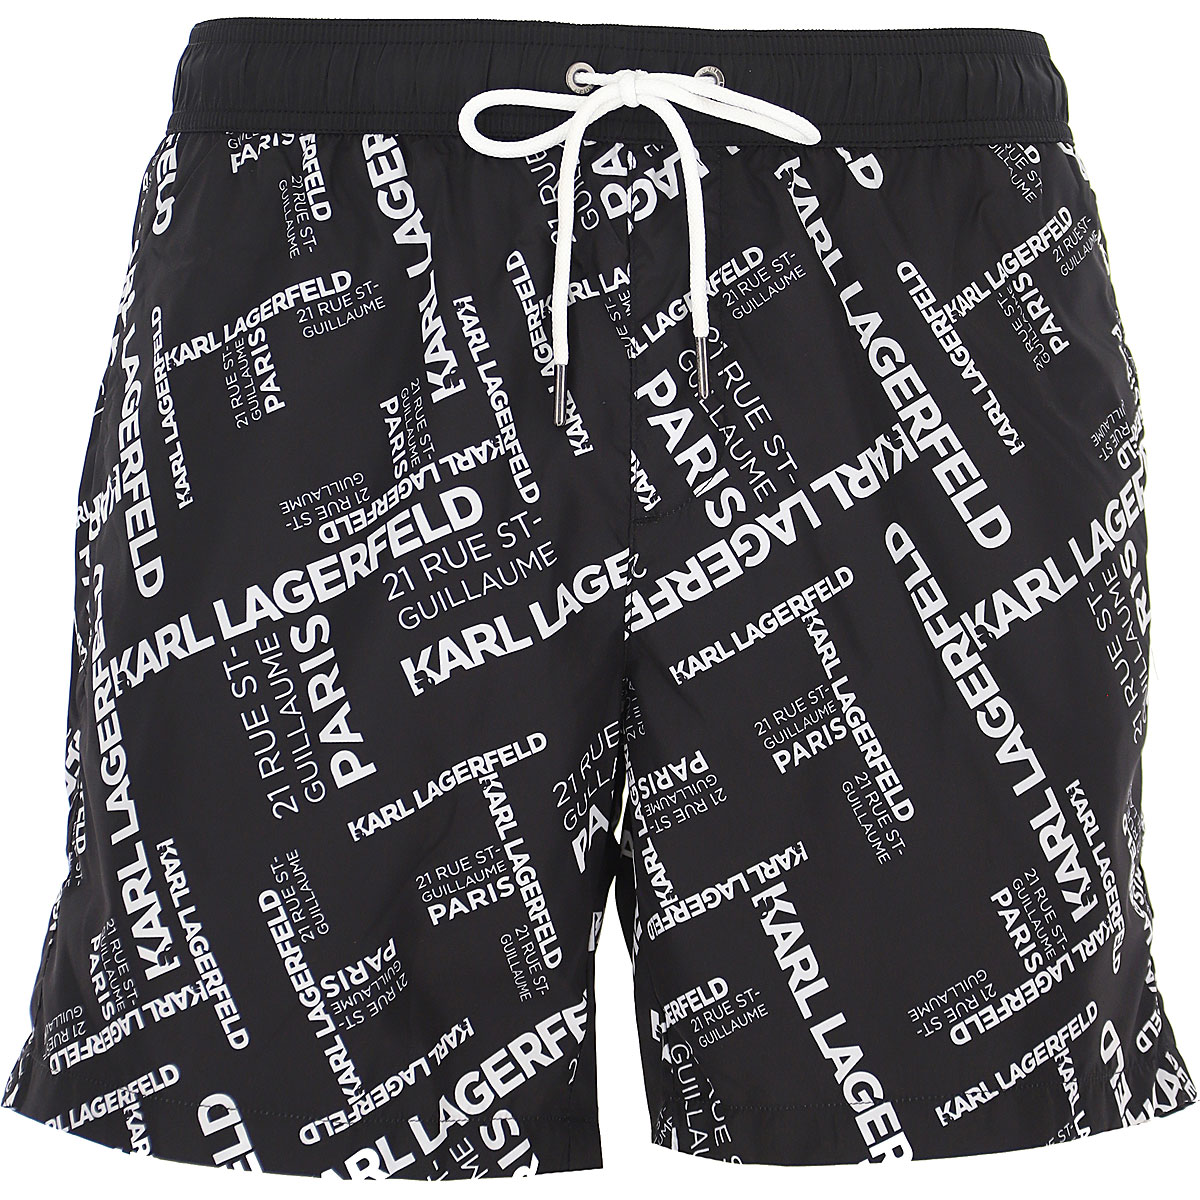 Mens Swimwear Karl Lagerfeld, Style code: kl21mbm14-black-